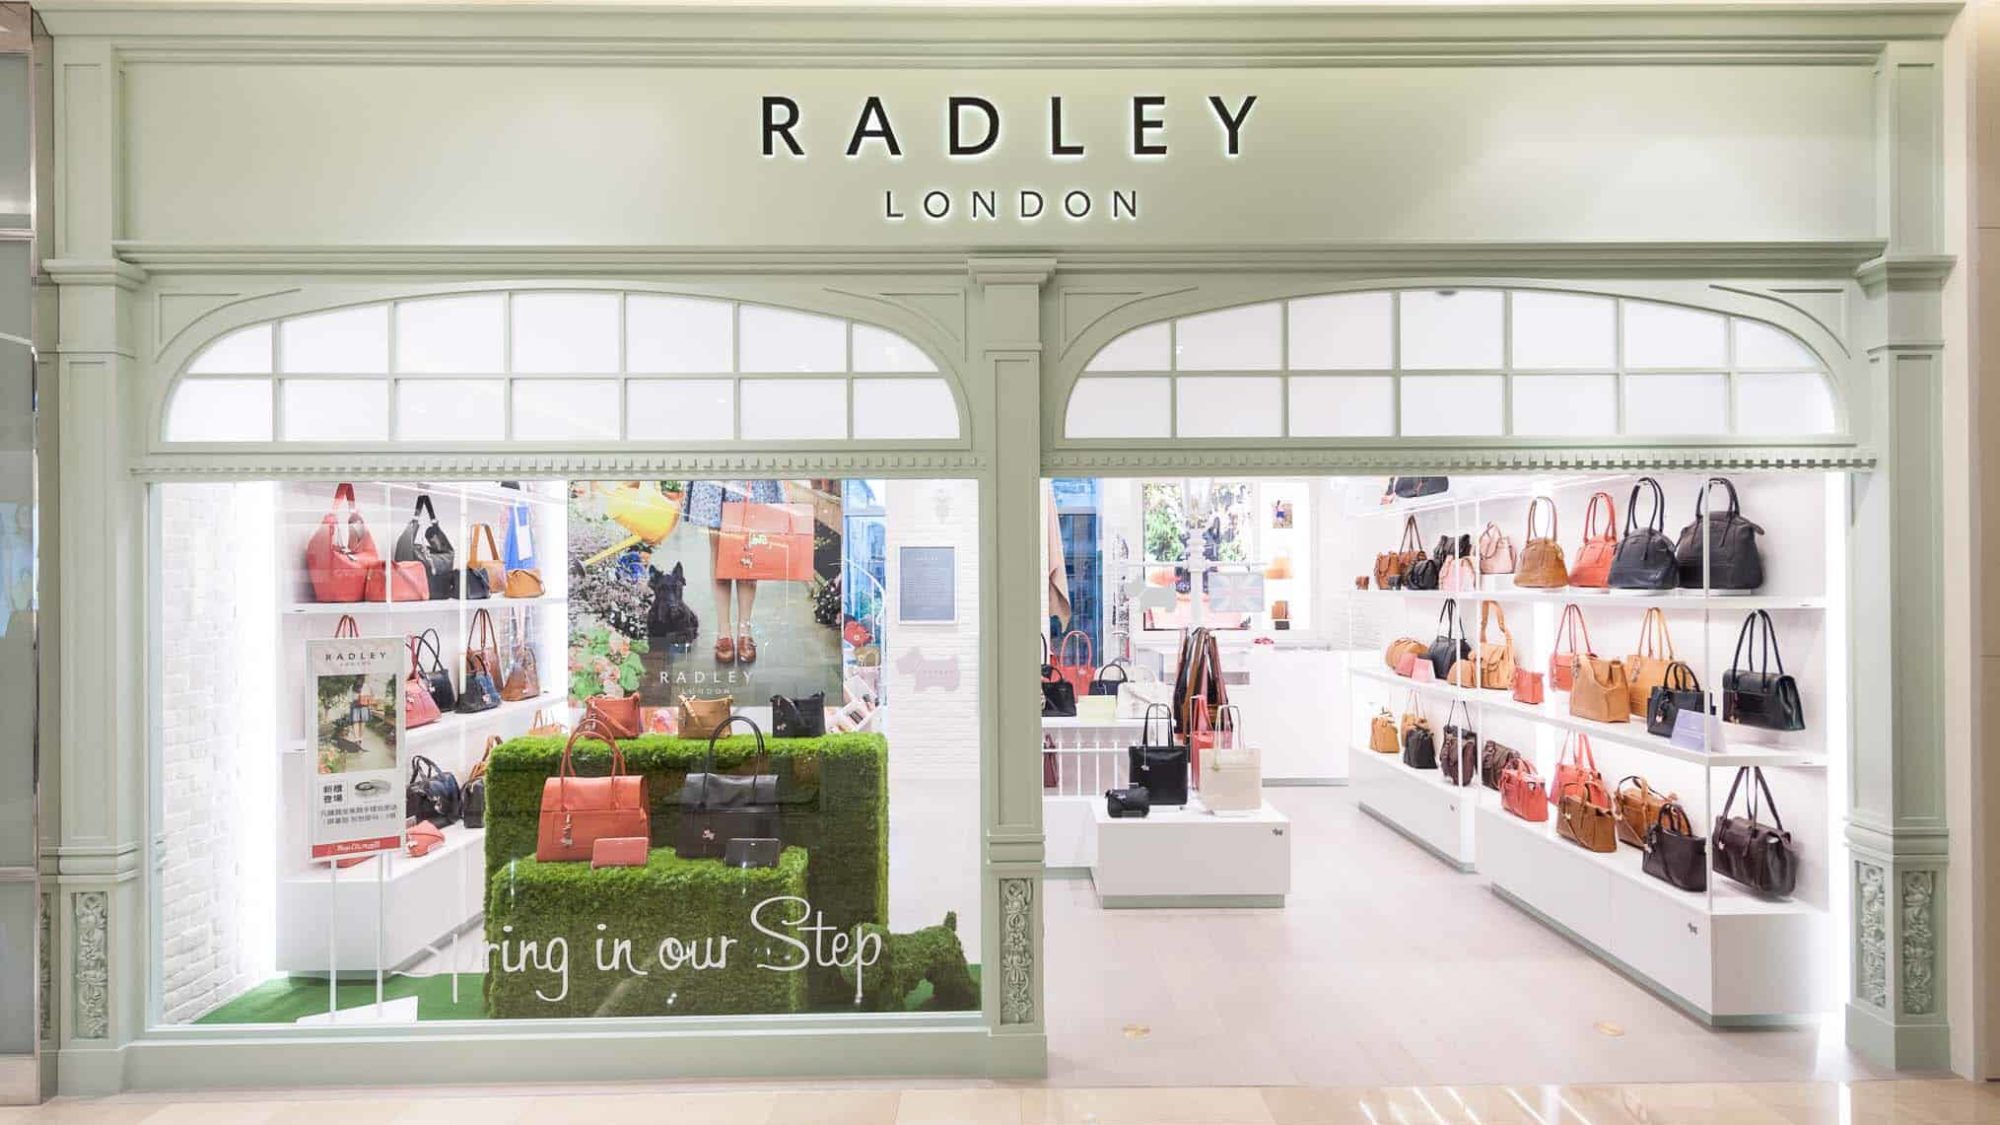 Radley increases sales